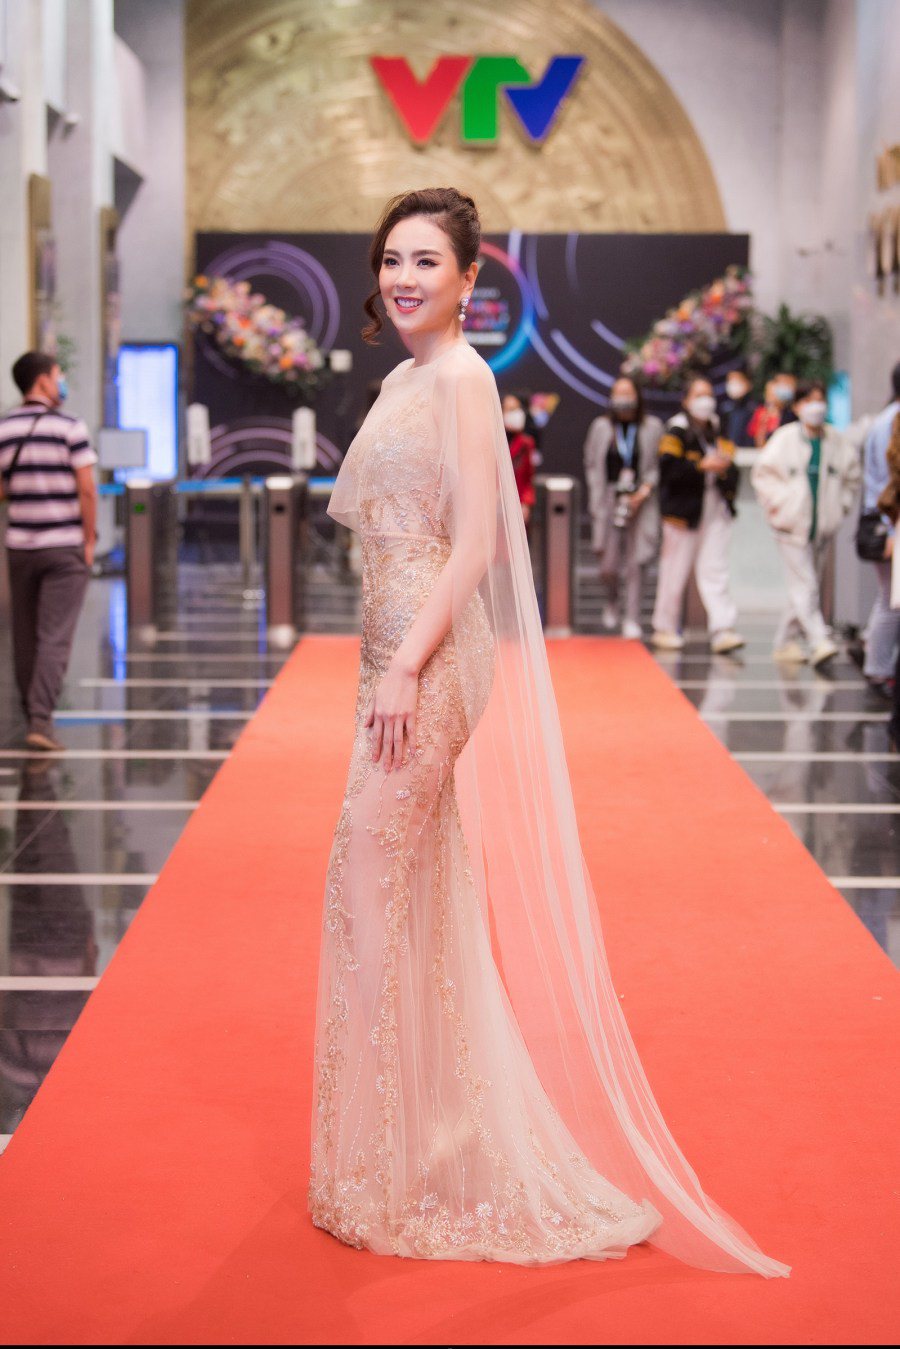 MC Mai Ngọc nghiến răng diện outfit hở bạo nhất nhì sự nghiệp, tiết lộ sự thật đau thương đằng sau tấm váy đẹp - Ảnh 3.